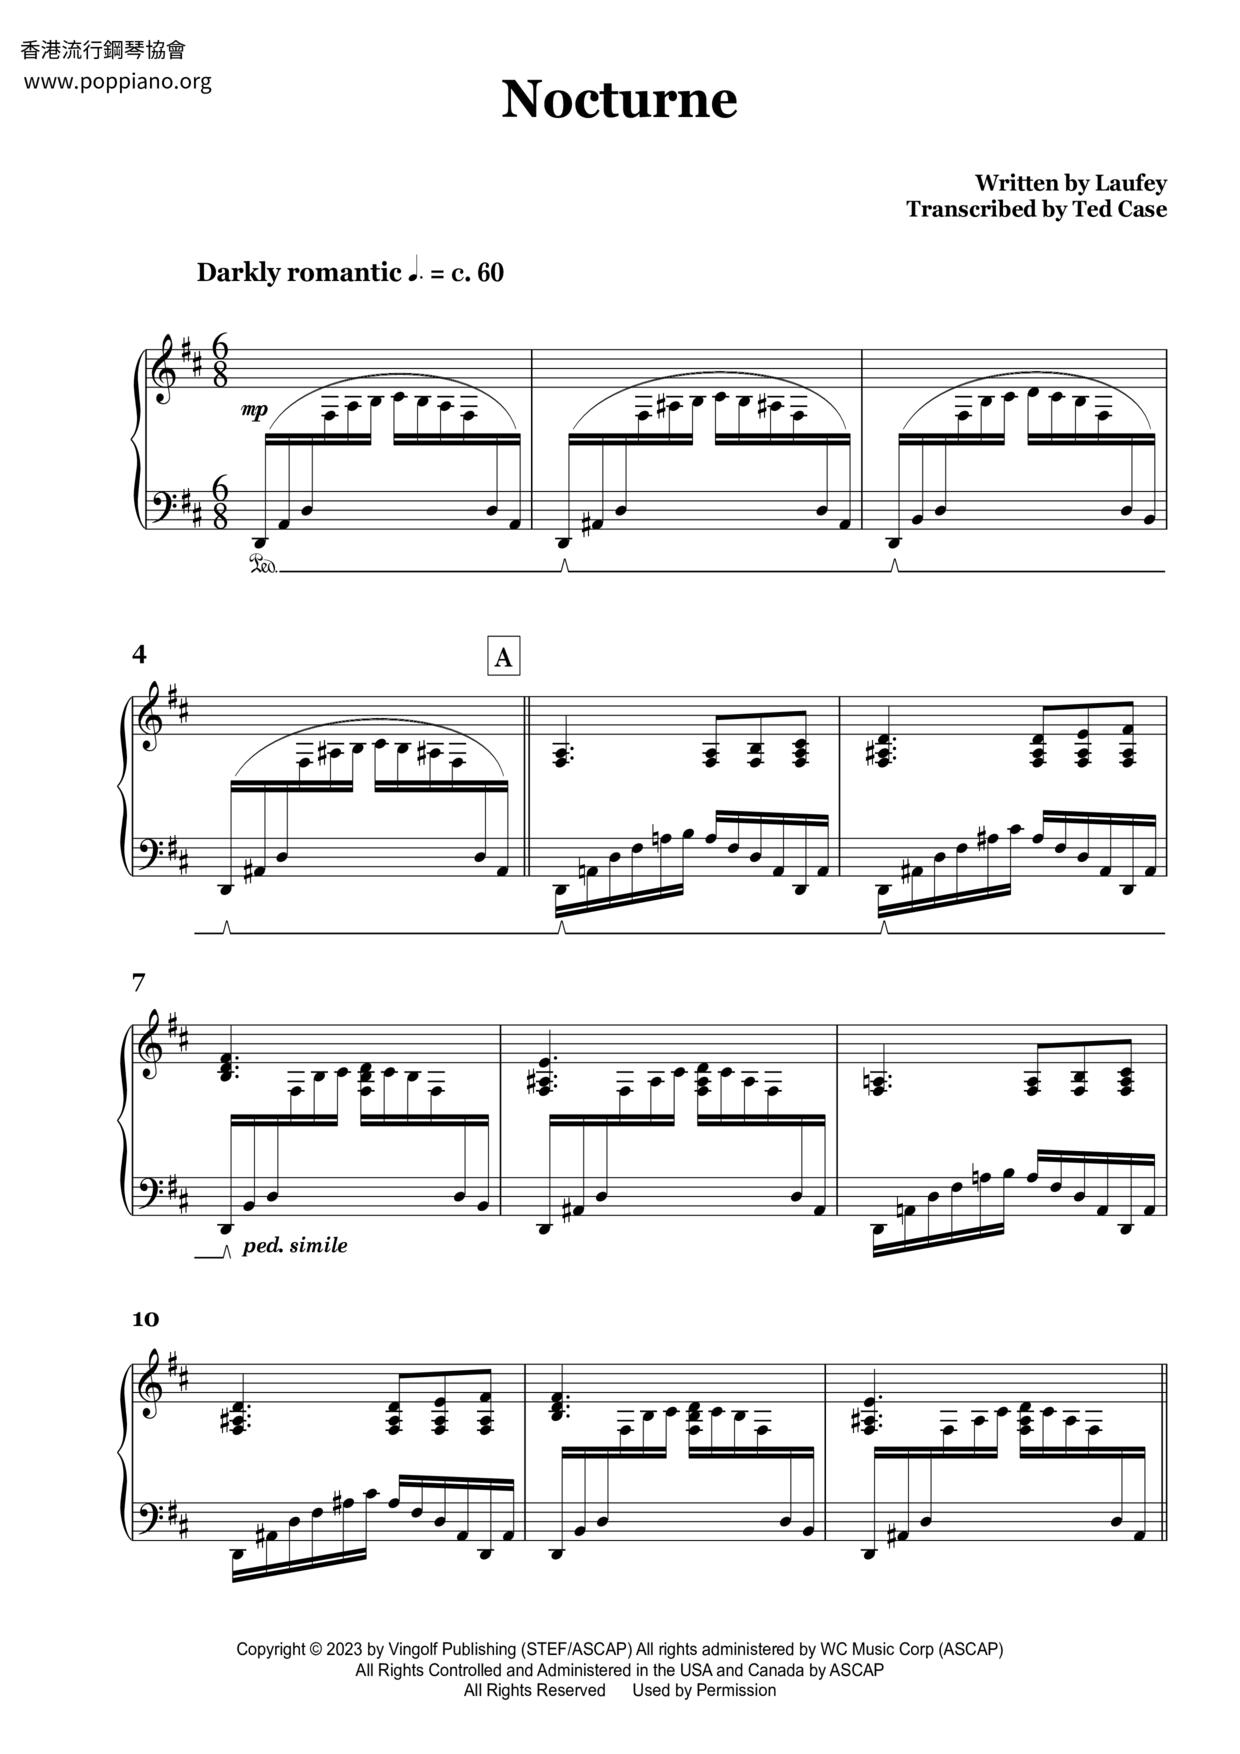 Nocturne (Interlude) Score